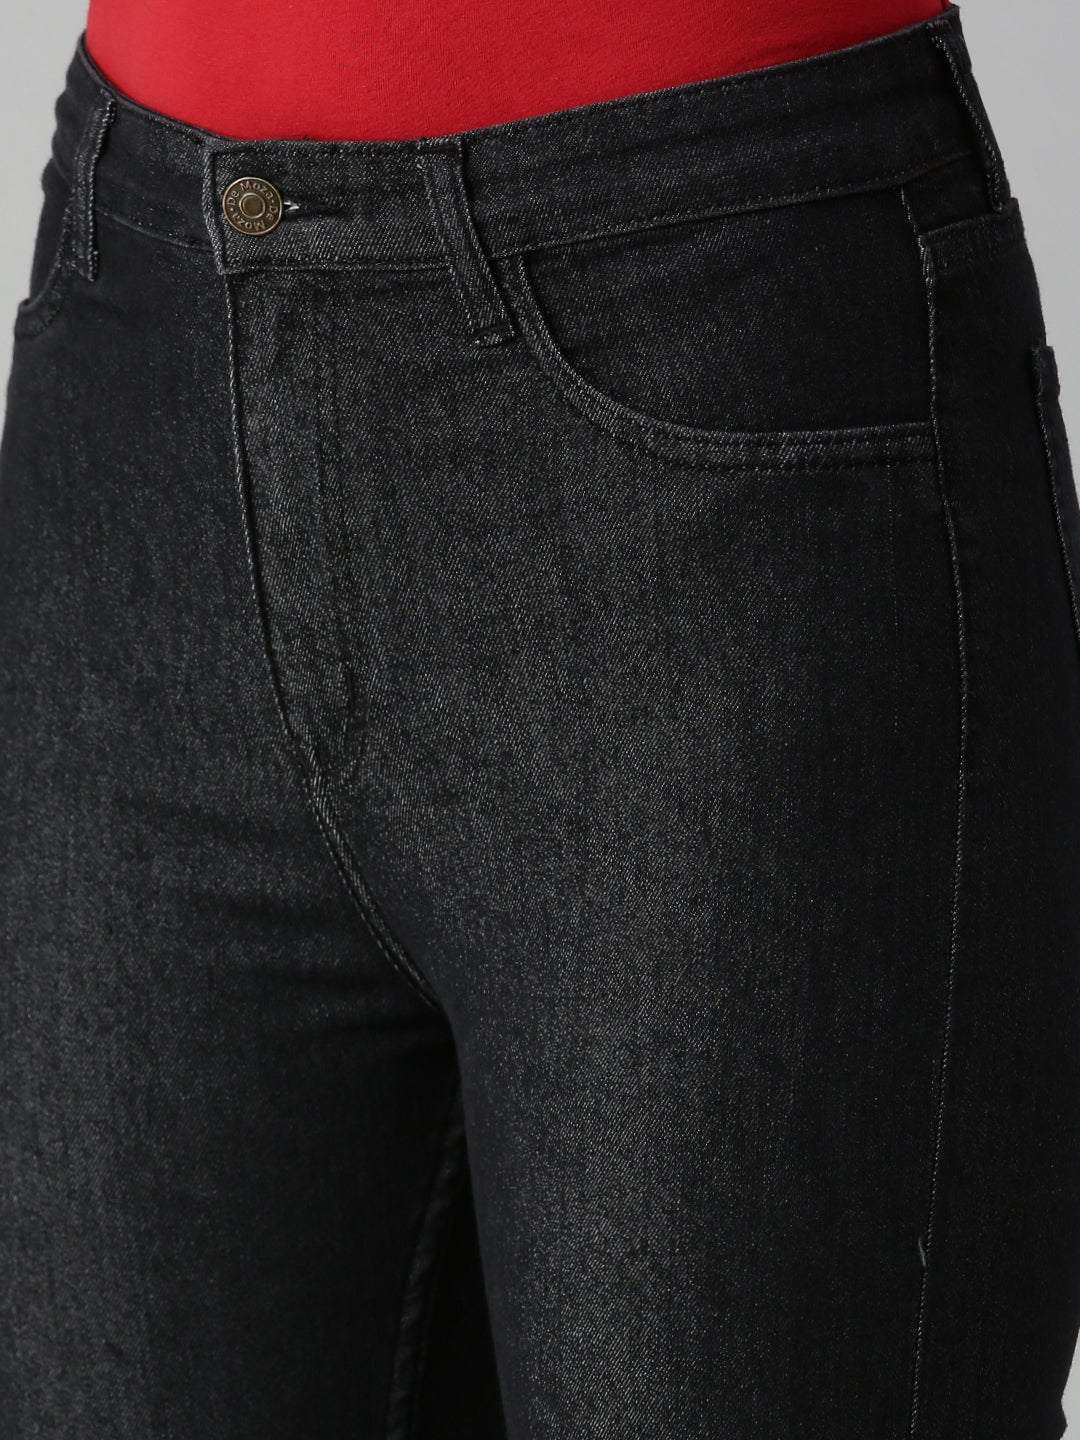 De Moza Women's Denim Jeans Pant Black